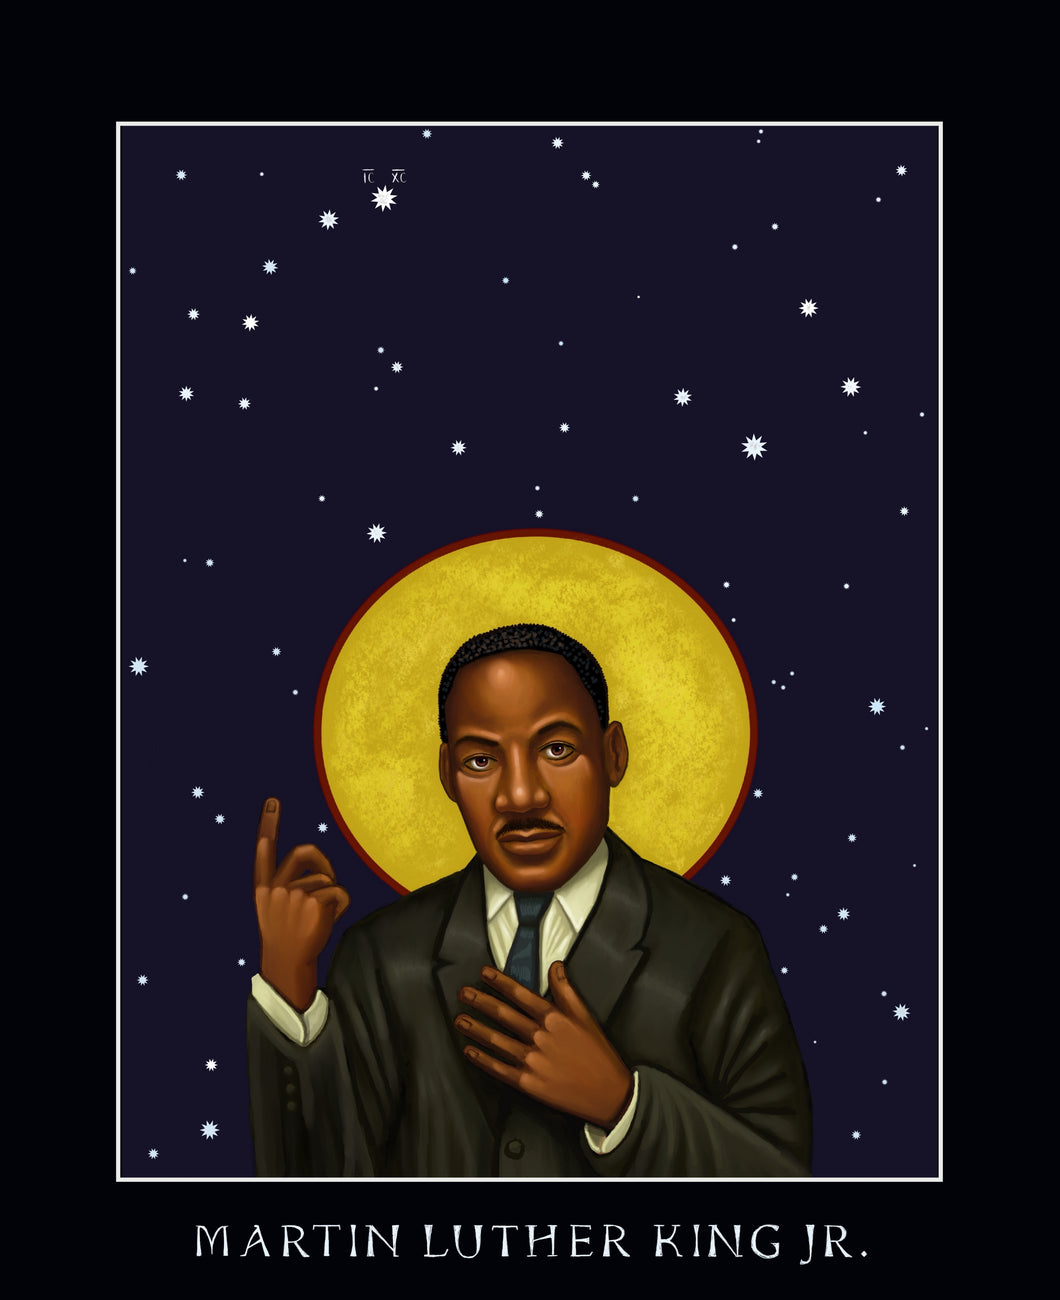 Rev. Dr. Martin Luther King Jr. Digital Image